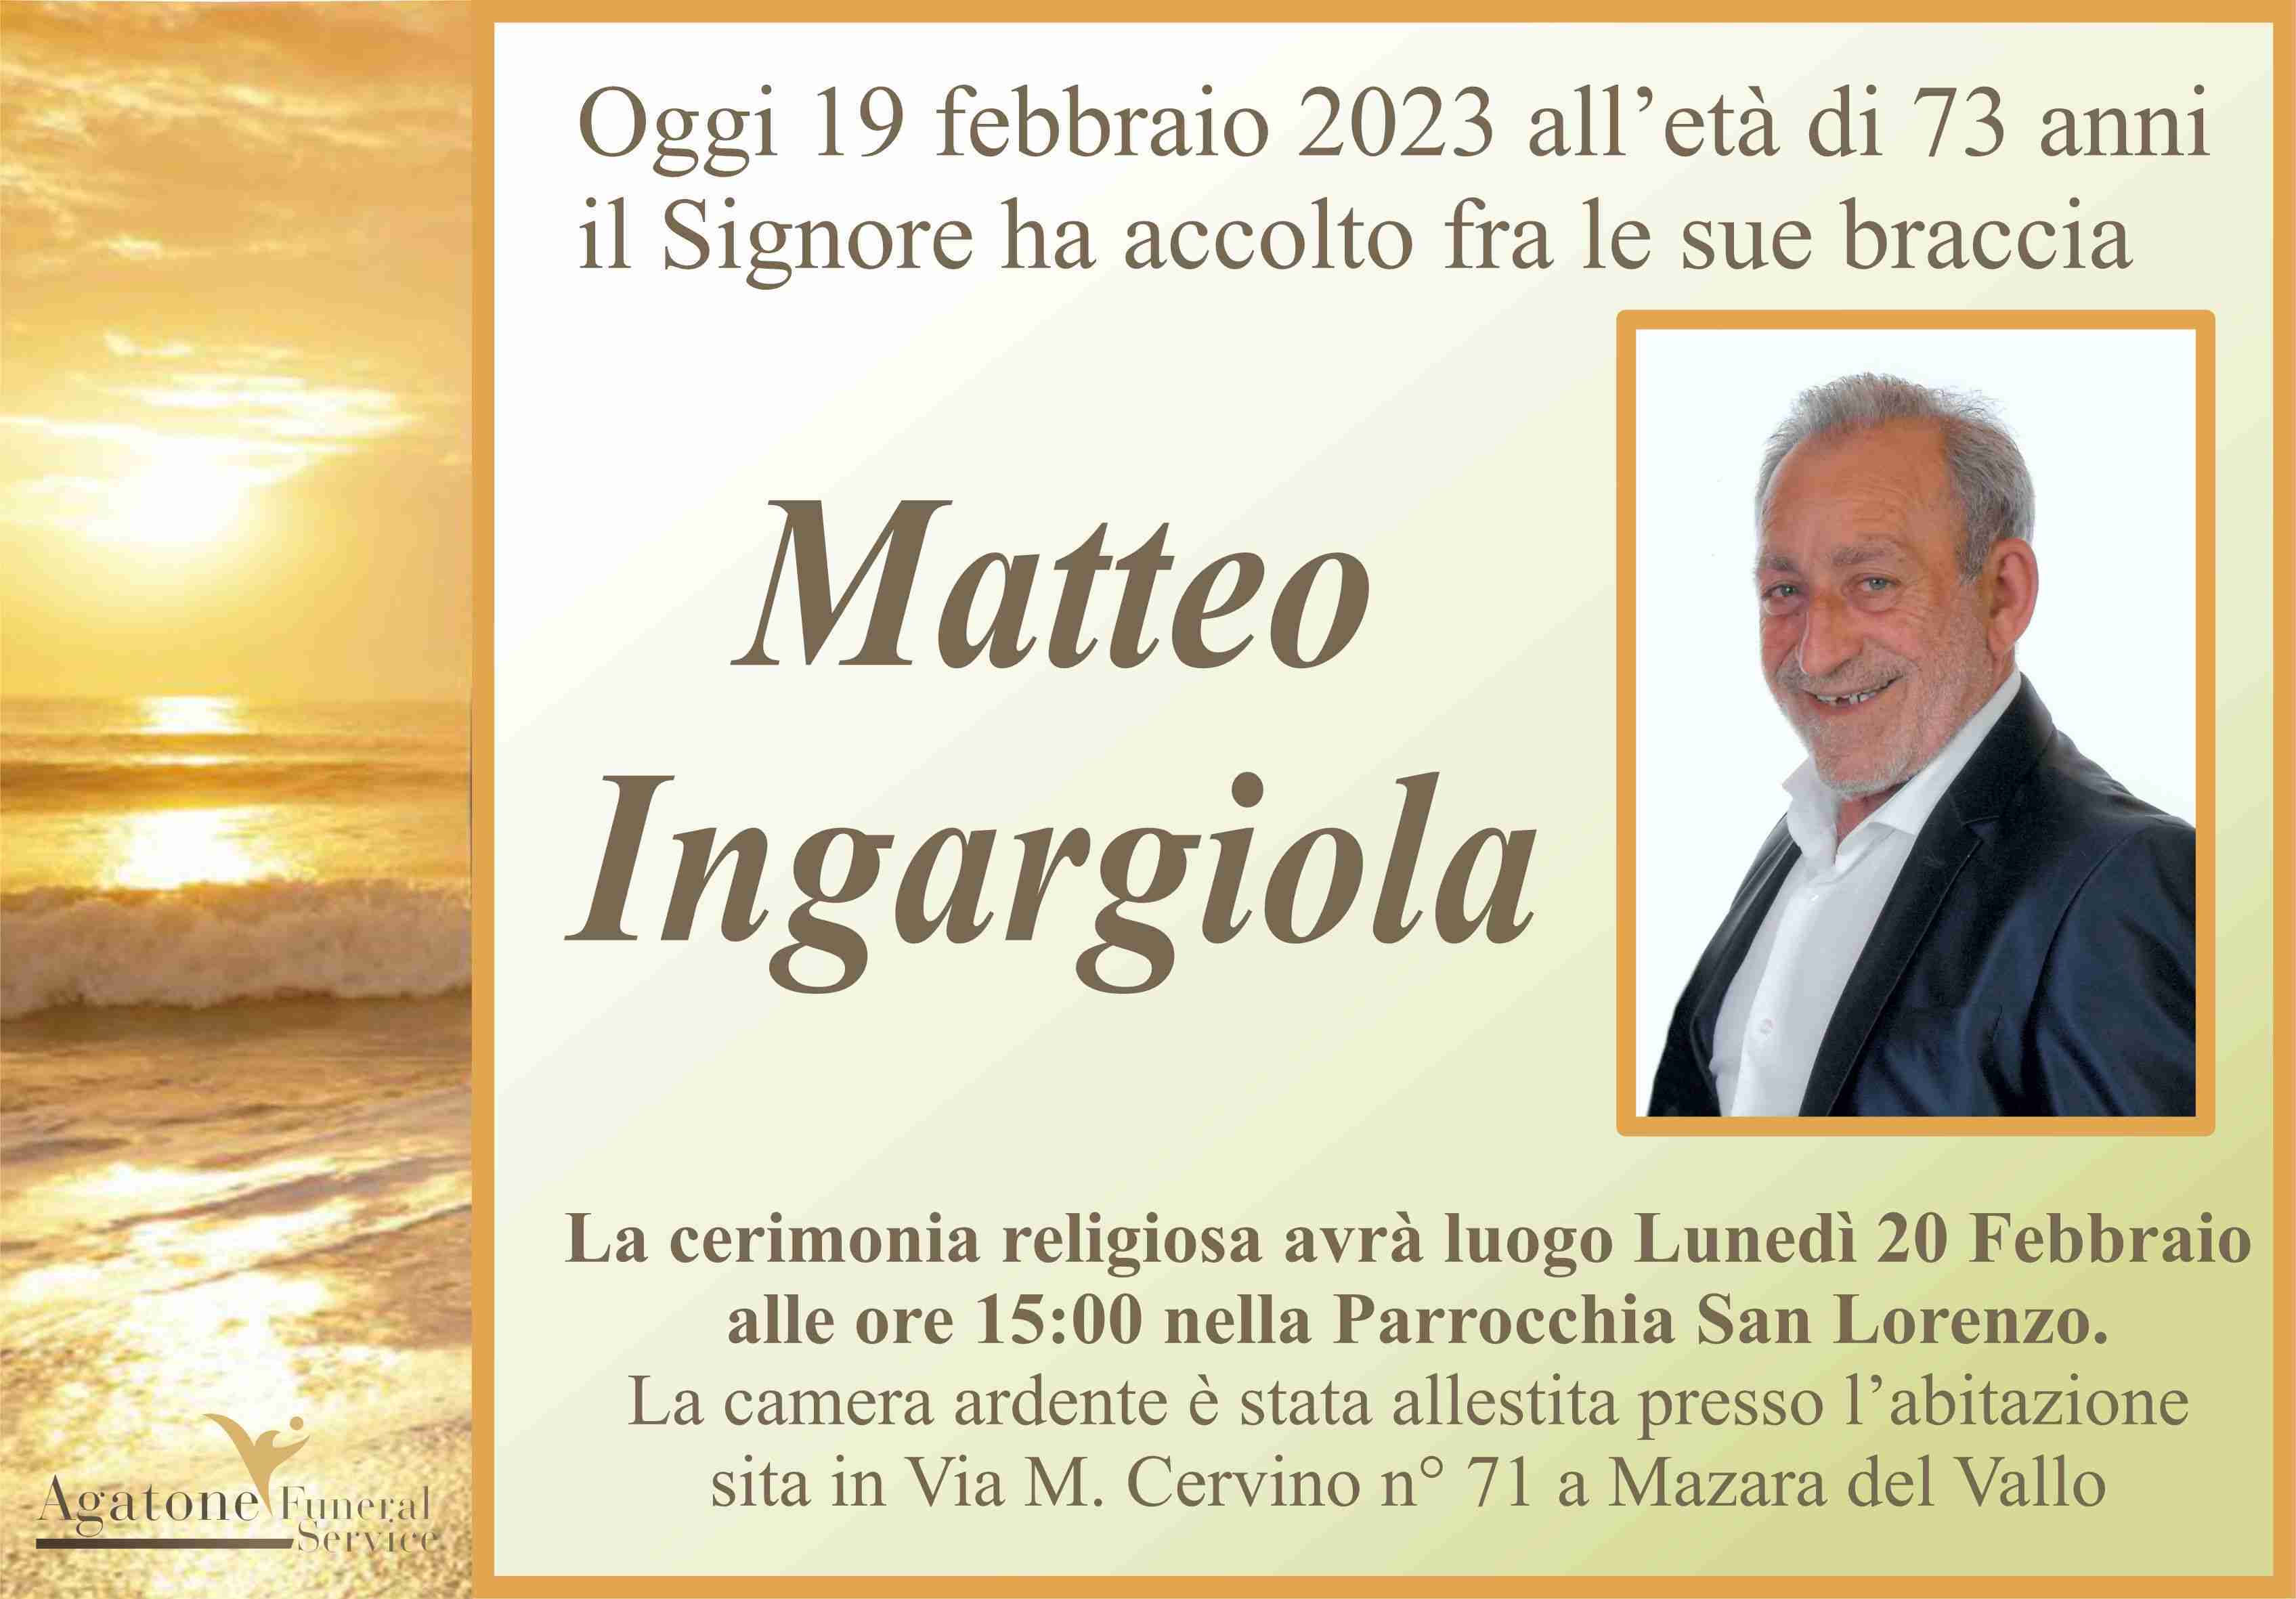 Matteo Ingargiola